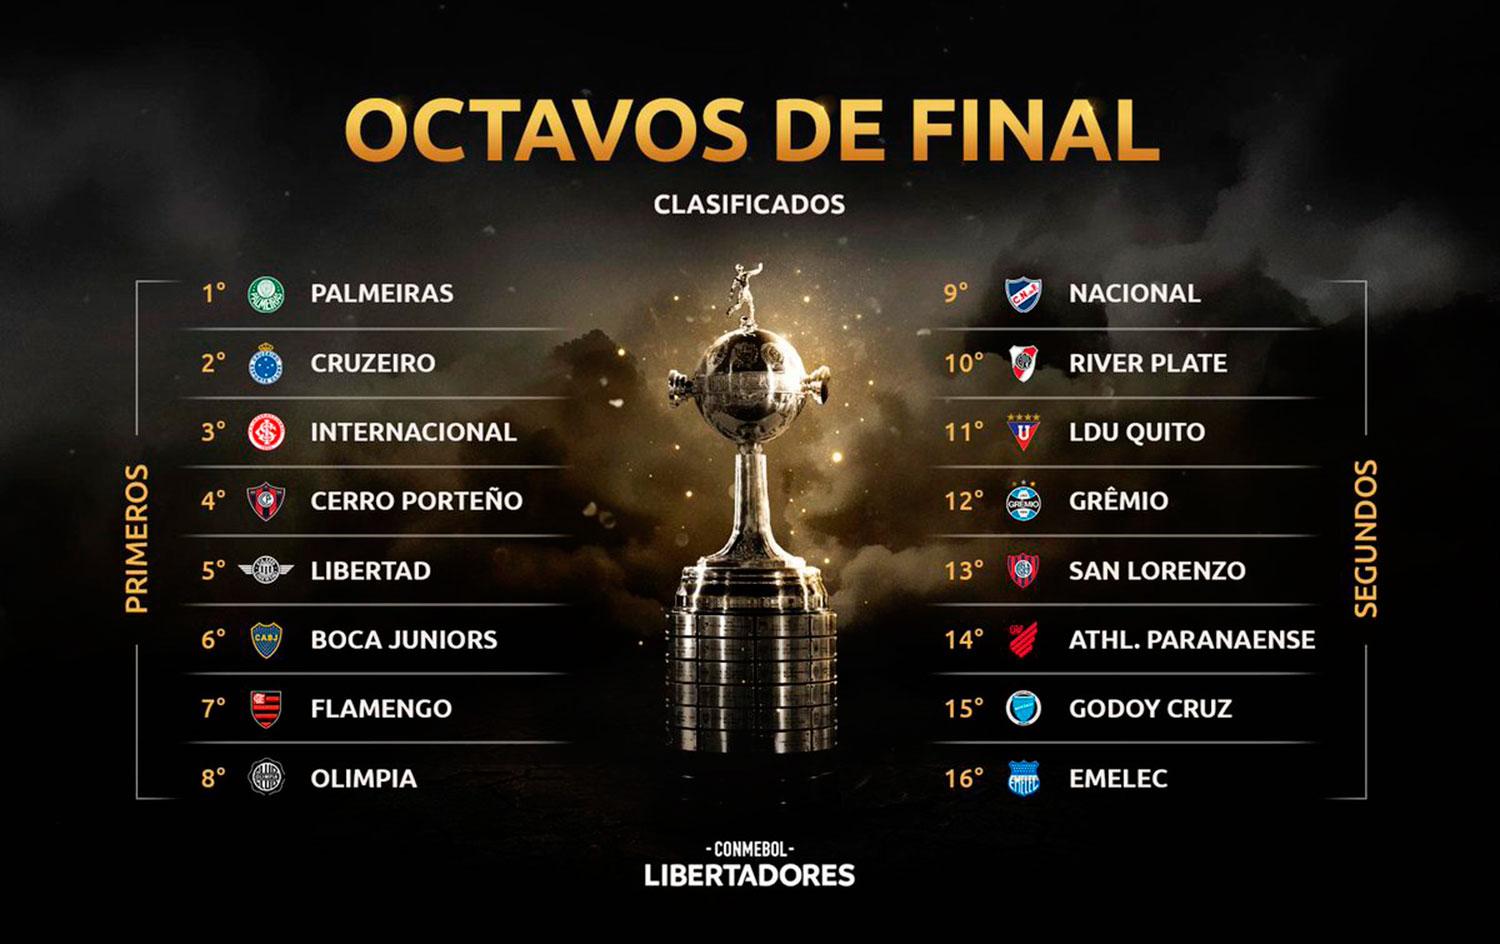 Así quedaron los cruces de los octavos de final de la Libertadores 2019